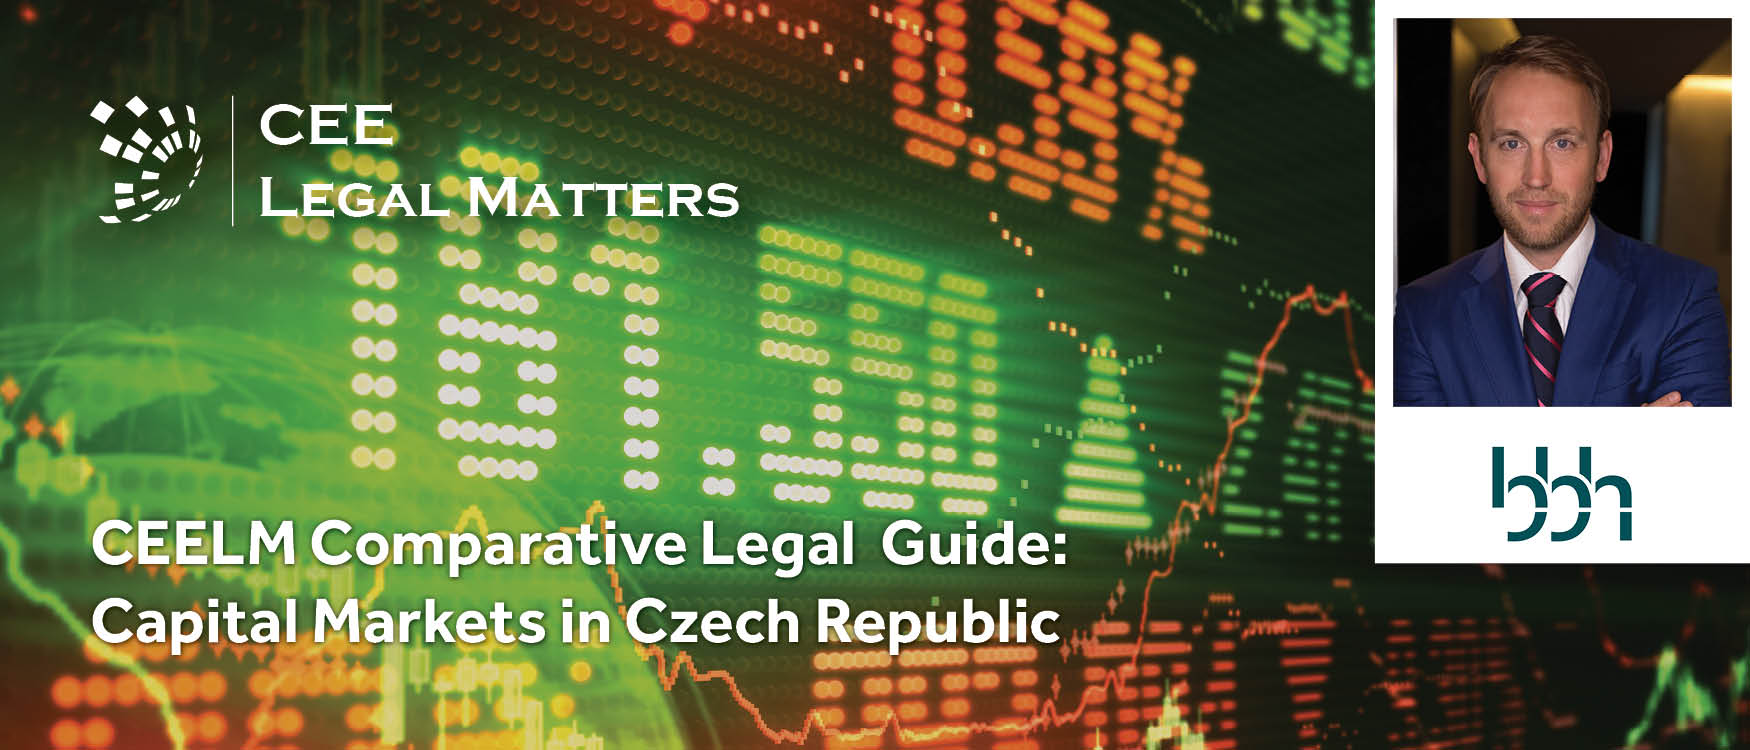 Capital Markets in Czechia